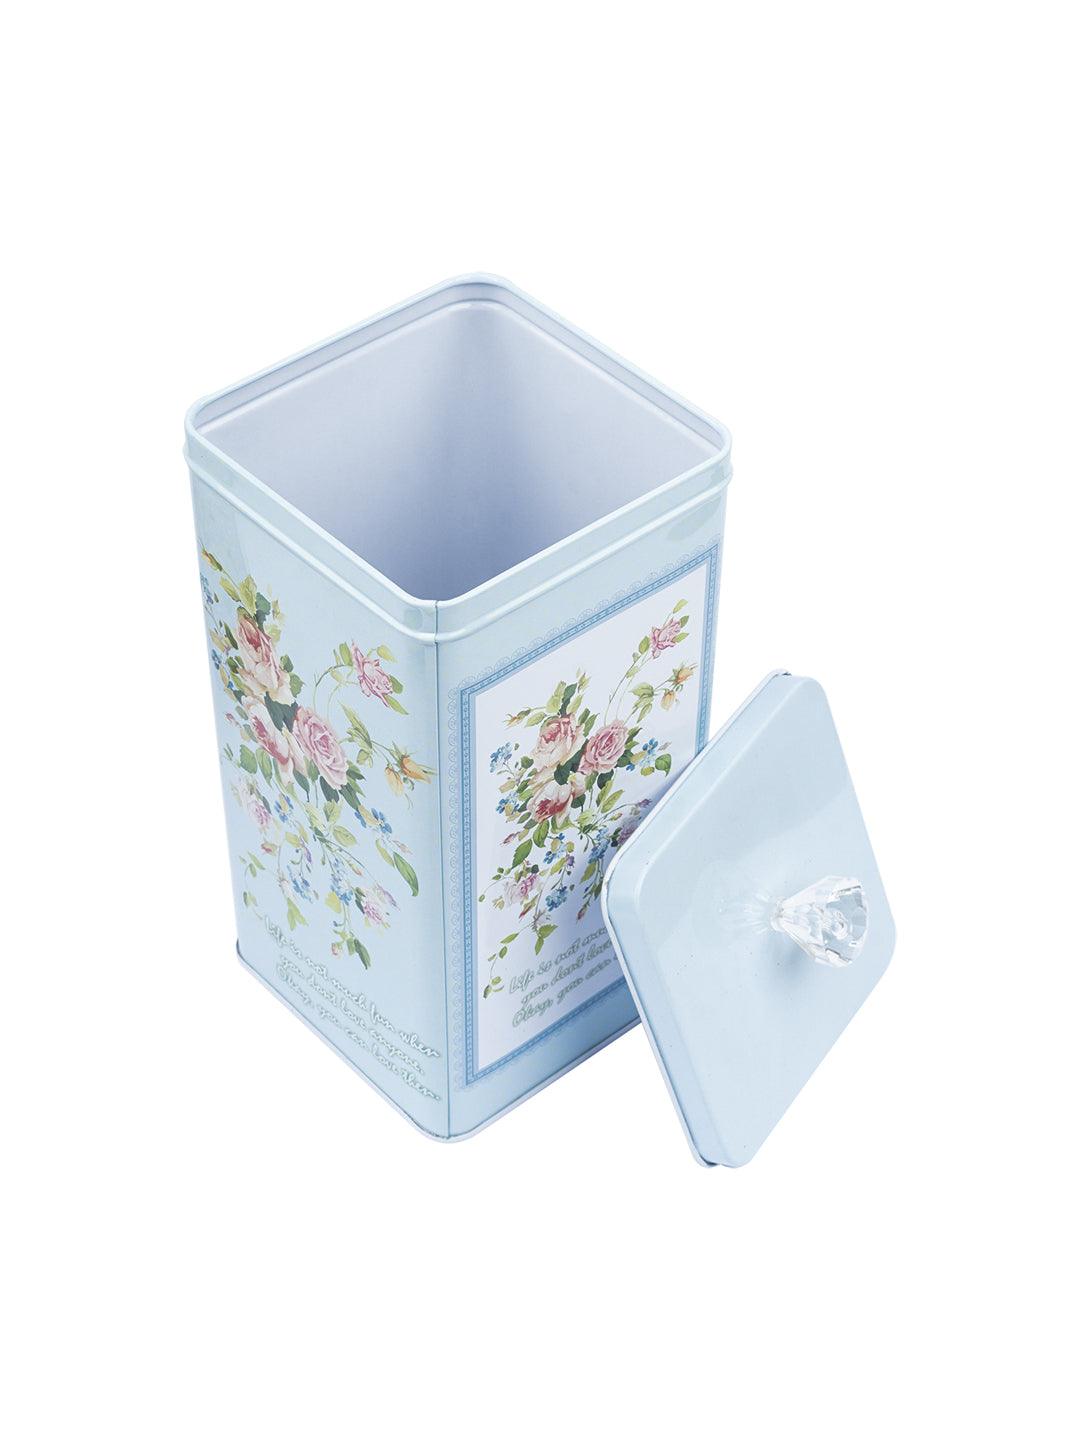 Floral Design Kitchen Tin Boxes - Assorted Colour - MARKET 99